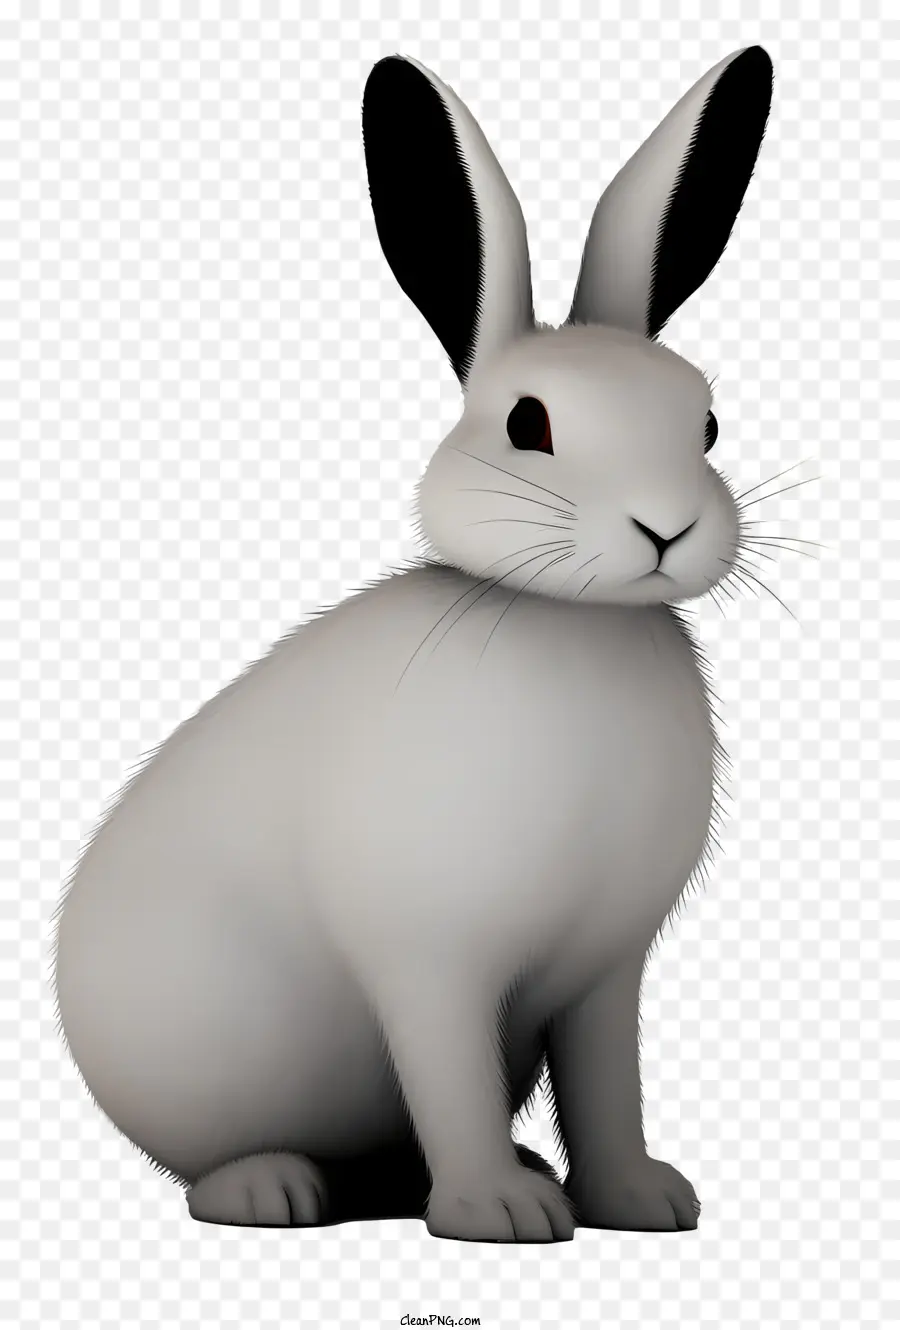 Kaninchen weißer Kaninchen flauschiger Kaninchen neugieriger Kaninchenhasen - Weißer Kaninchen mit schwarzer Nase und braunen Augen